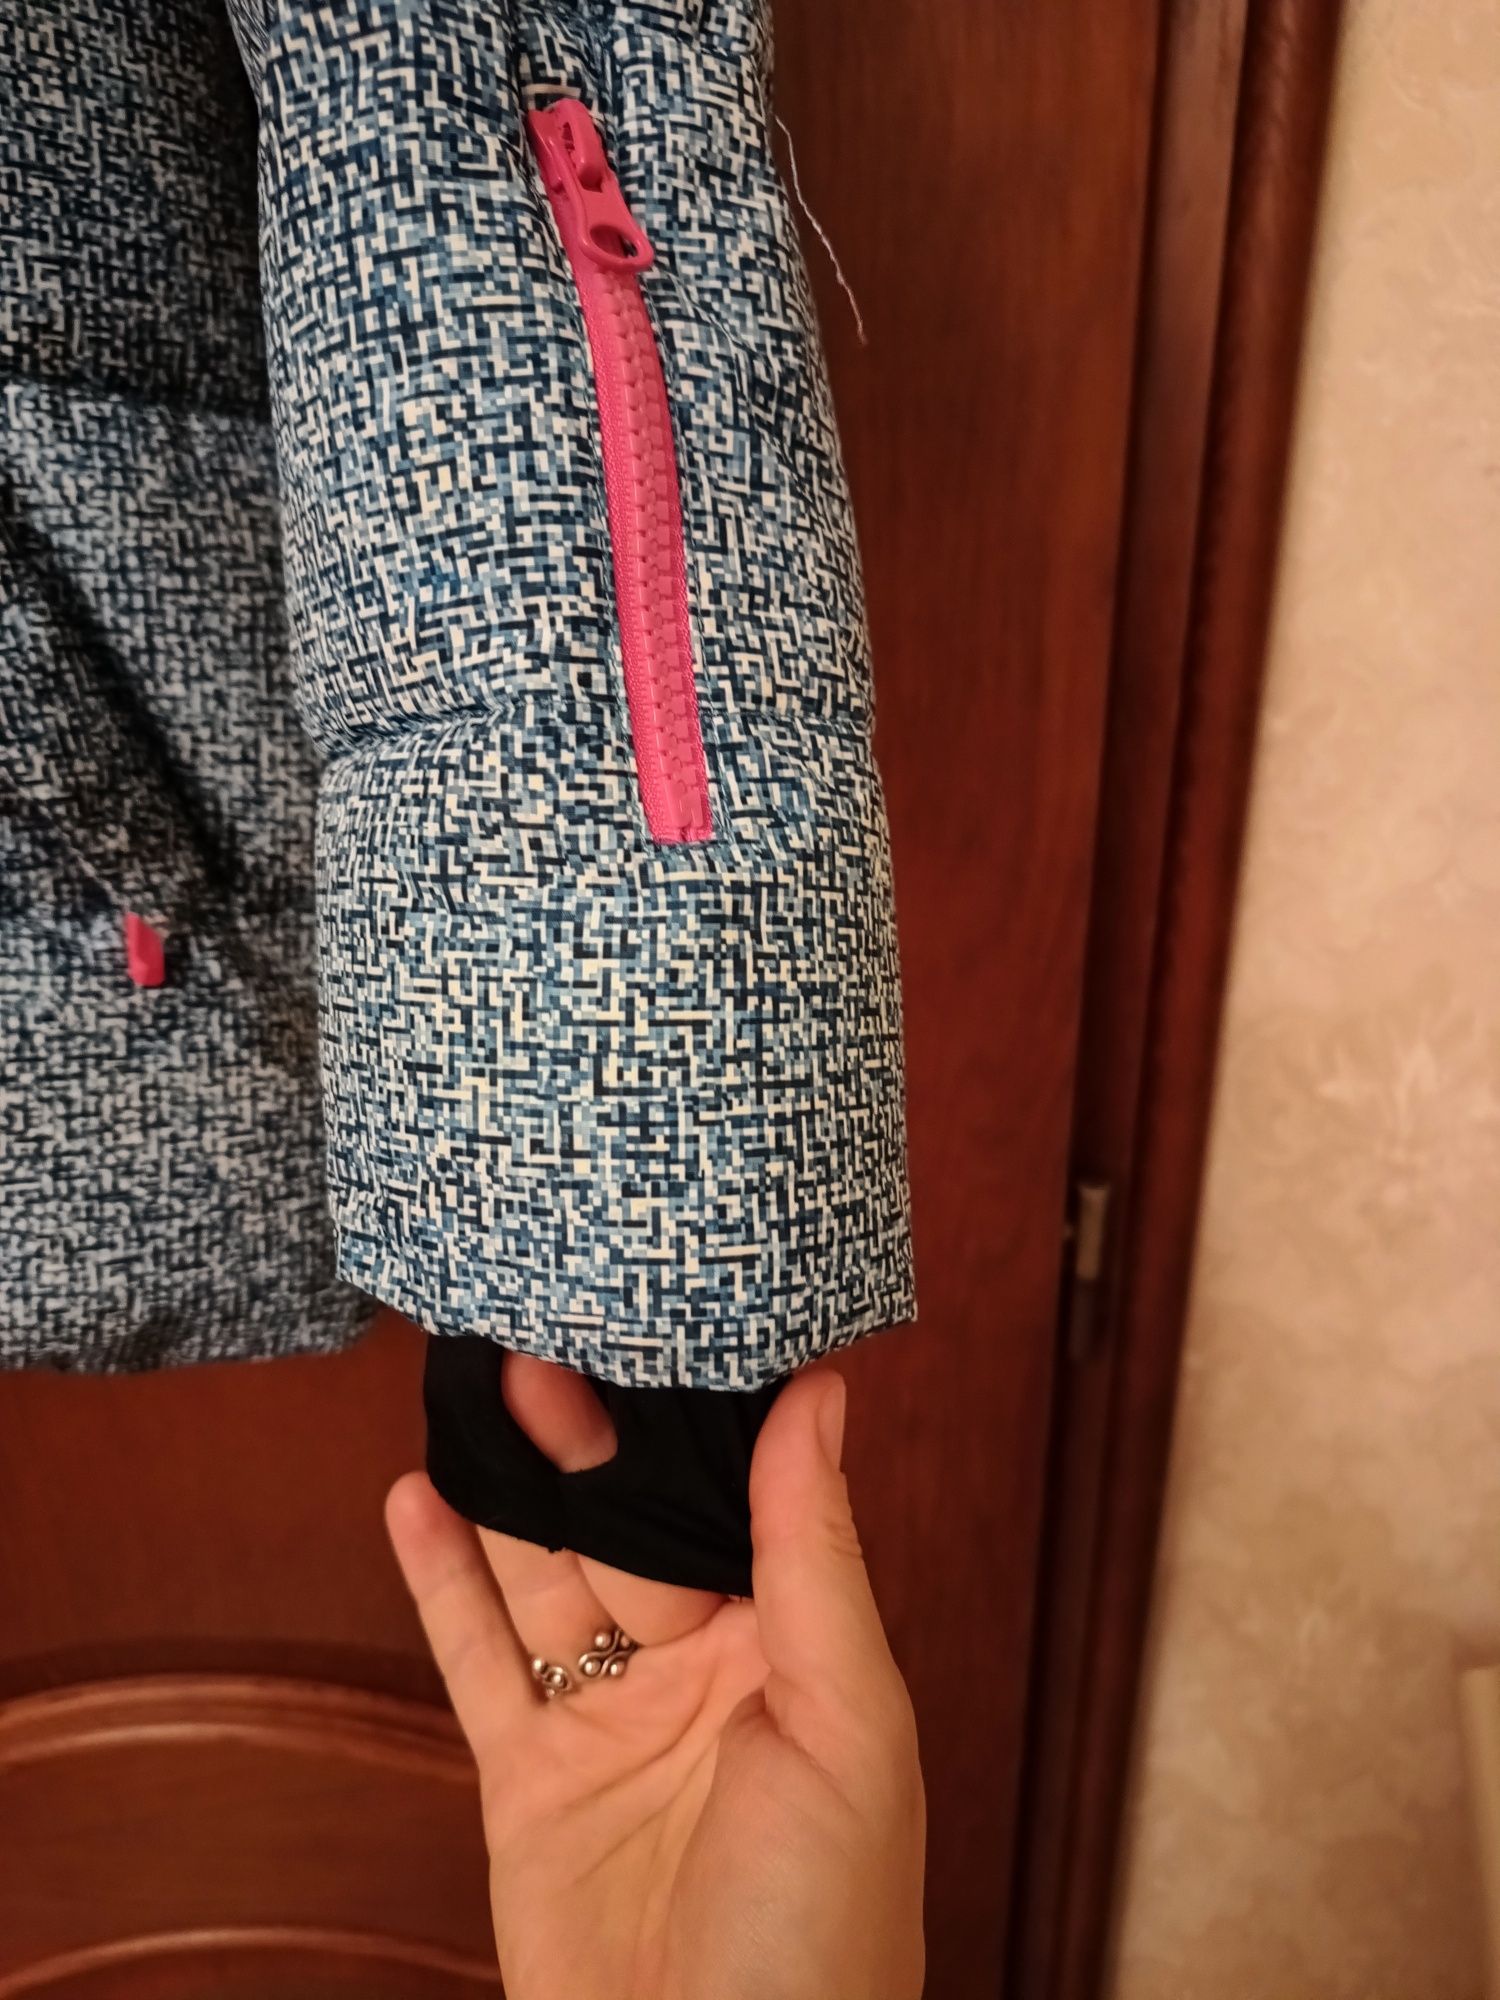 Куртка зимняя лыжная Azimuth, размер XL